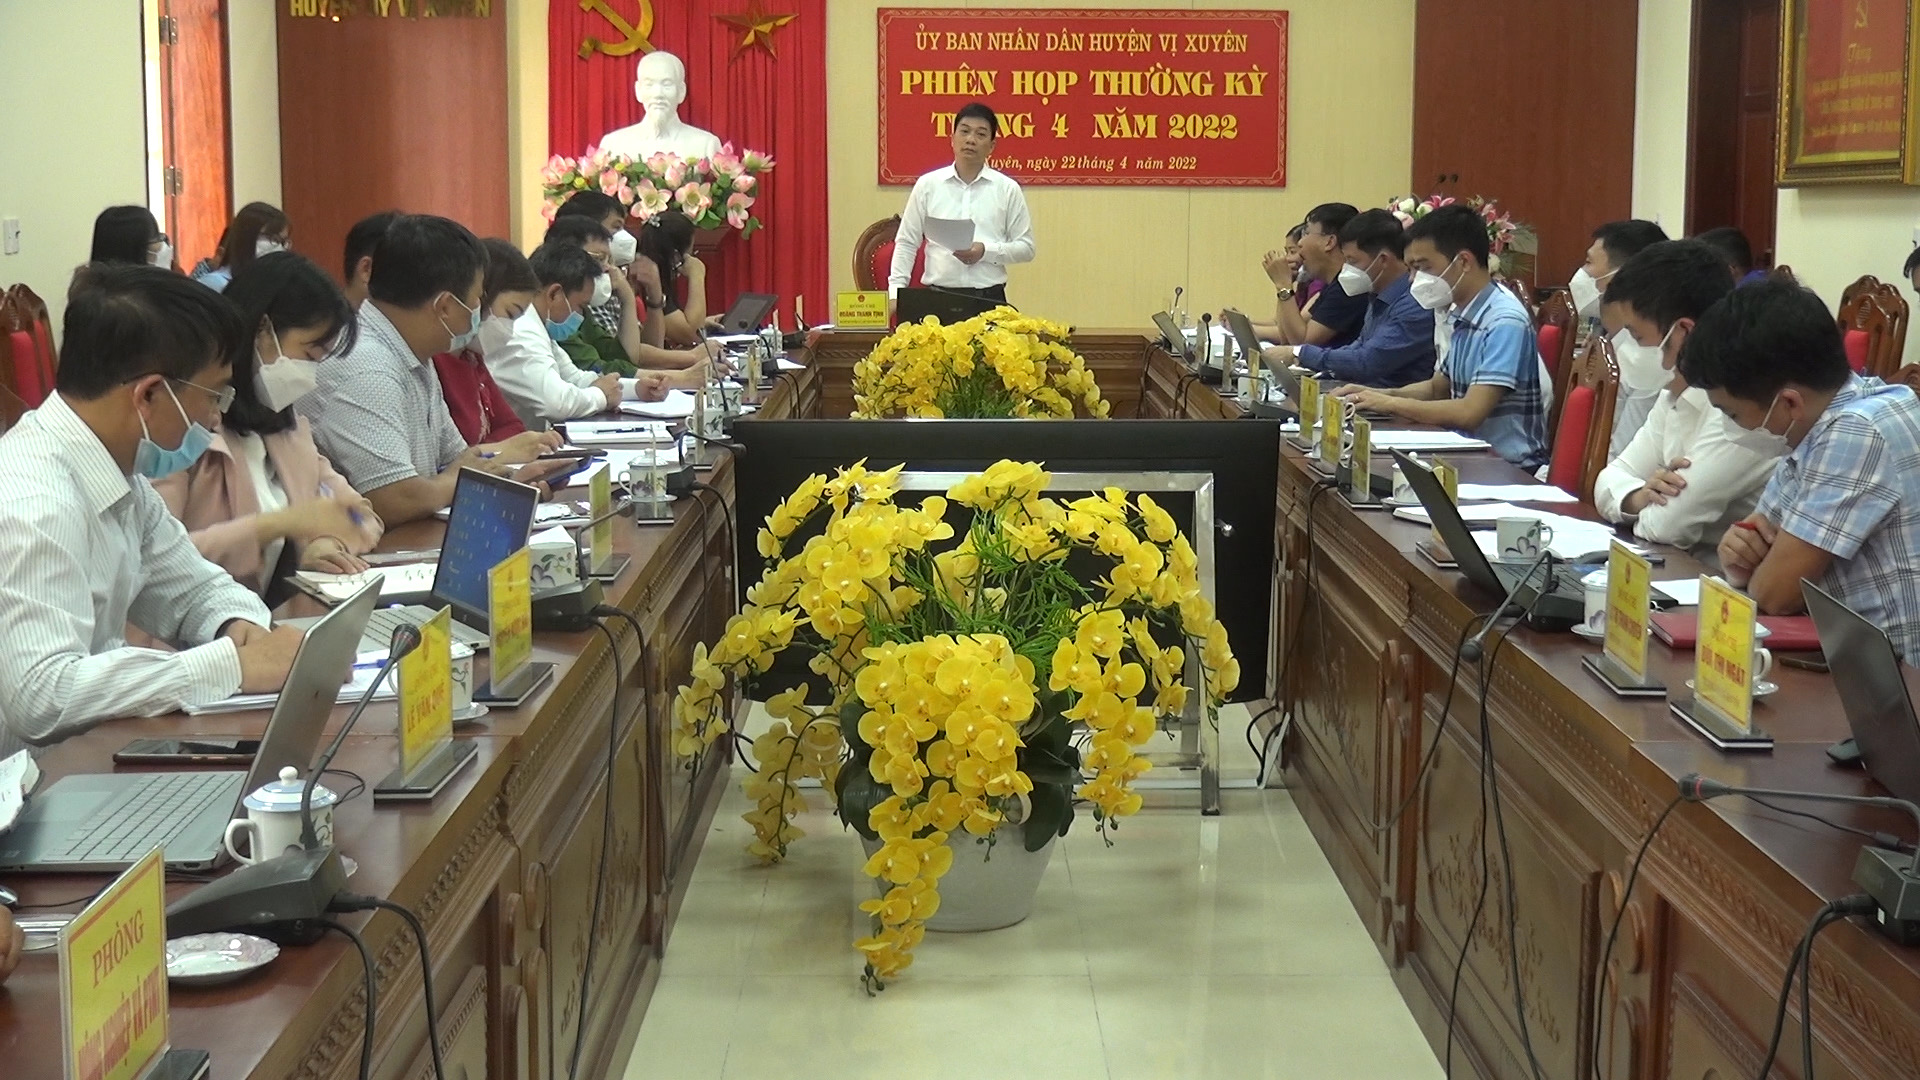 Phiên họp thường kỳ tháng 4 UBND huyện Vị Xuyên